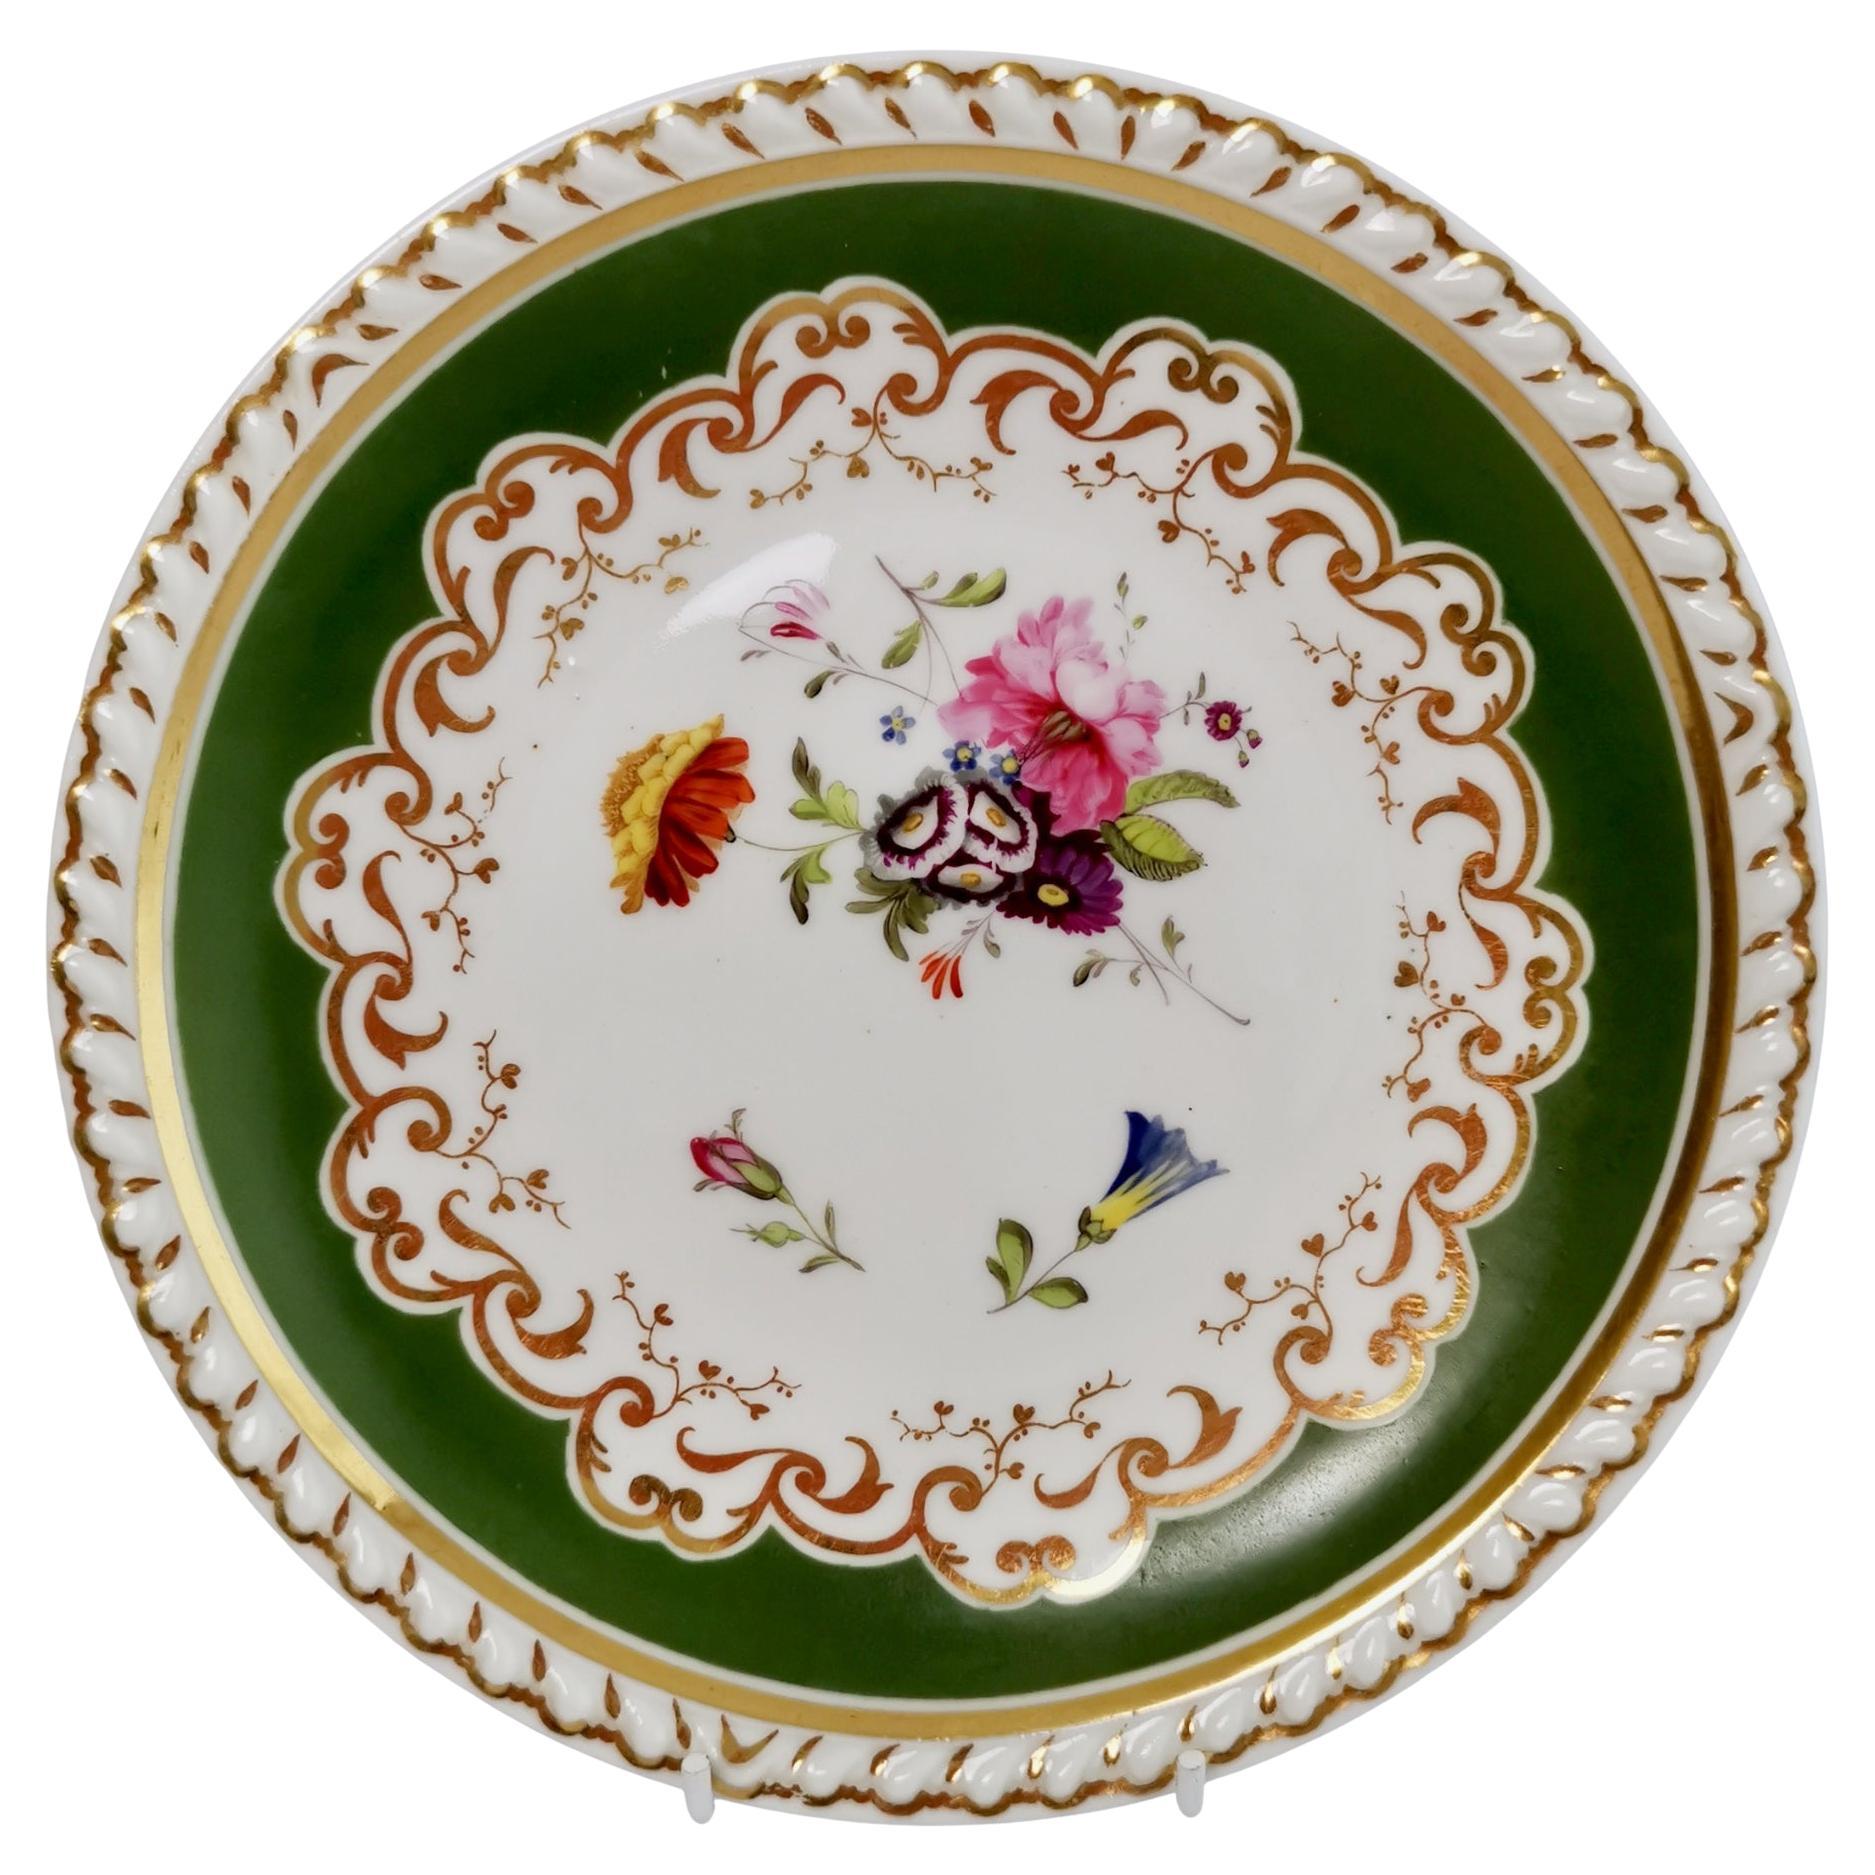 Assiette en porcelaine Ridgway, verte avec fleurs peintes à la main, Régence, vers 1825